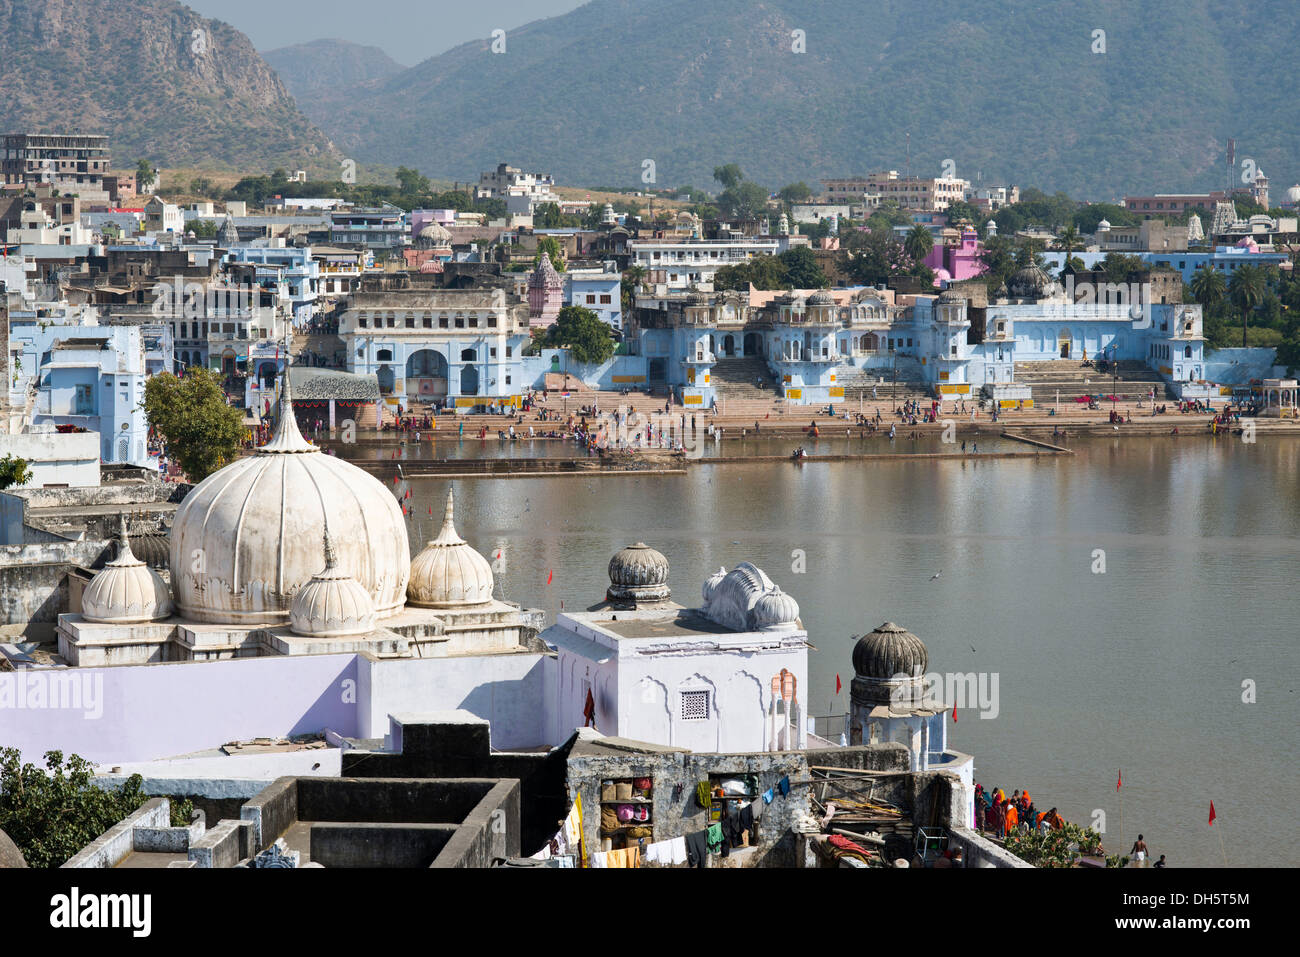 Les temples, les bâtiments et les Ghâts occidentaux dans le saint lac Pushkar, lieu de pèlerinage hindou, Pushkar, Rajasthan, India Banque D'Images